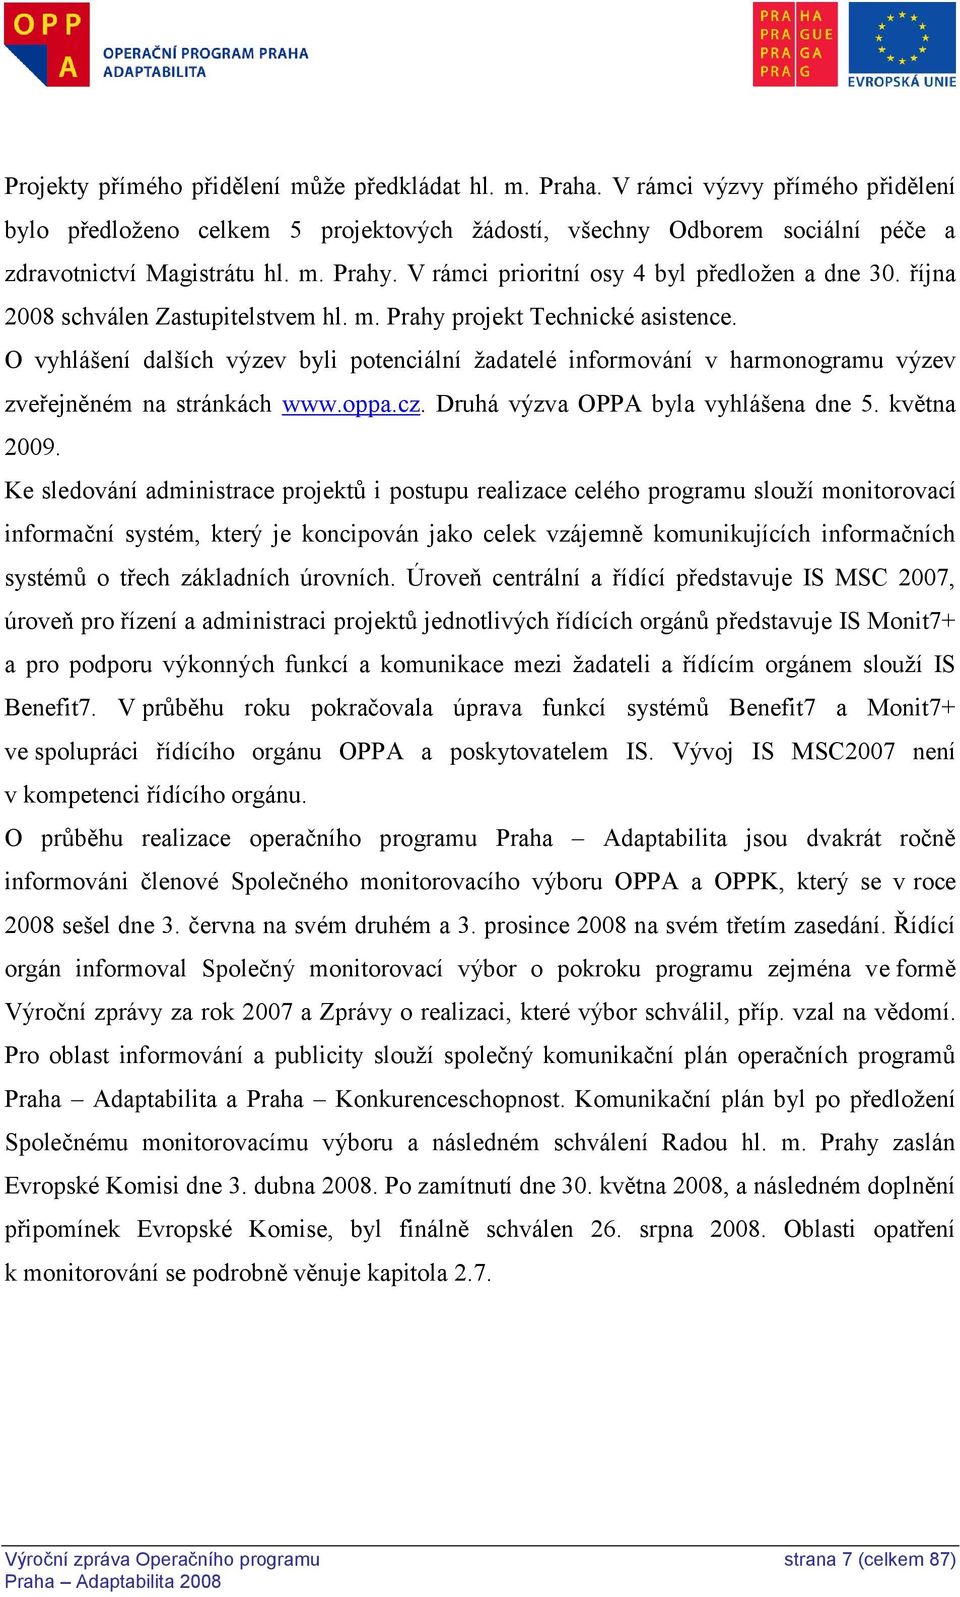 O vyhlášení dalších výzev byli potenciální ţadatelé informování v harmonogramu výzev zveřejněném na stránkách www.oppa.cz. Druhá výzva OPPA byla vyhlášena dne 5. května 2009.